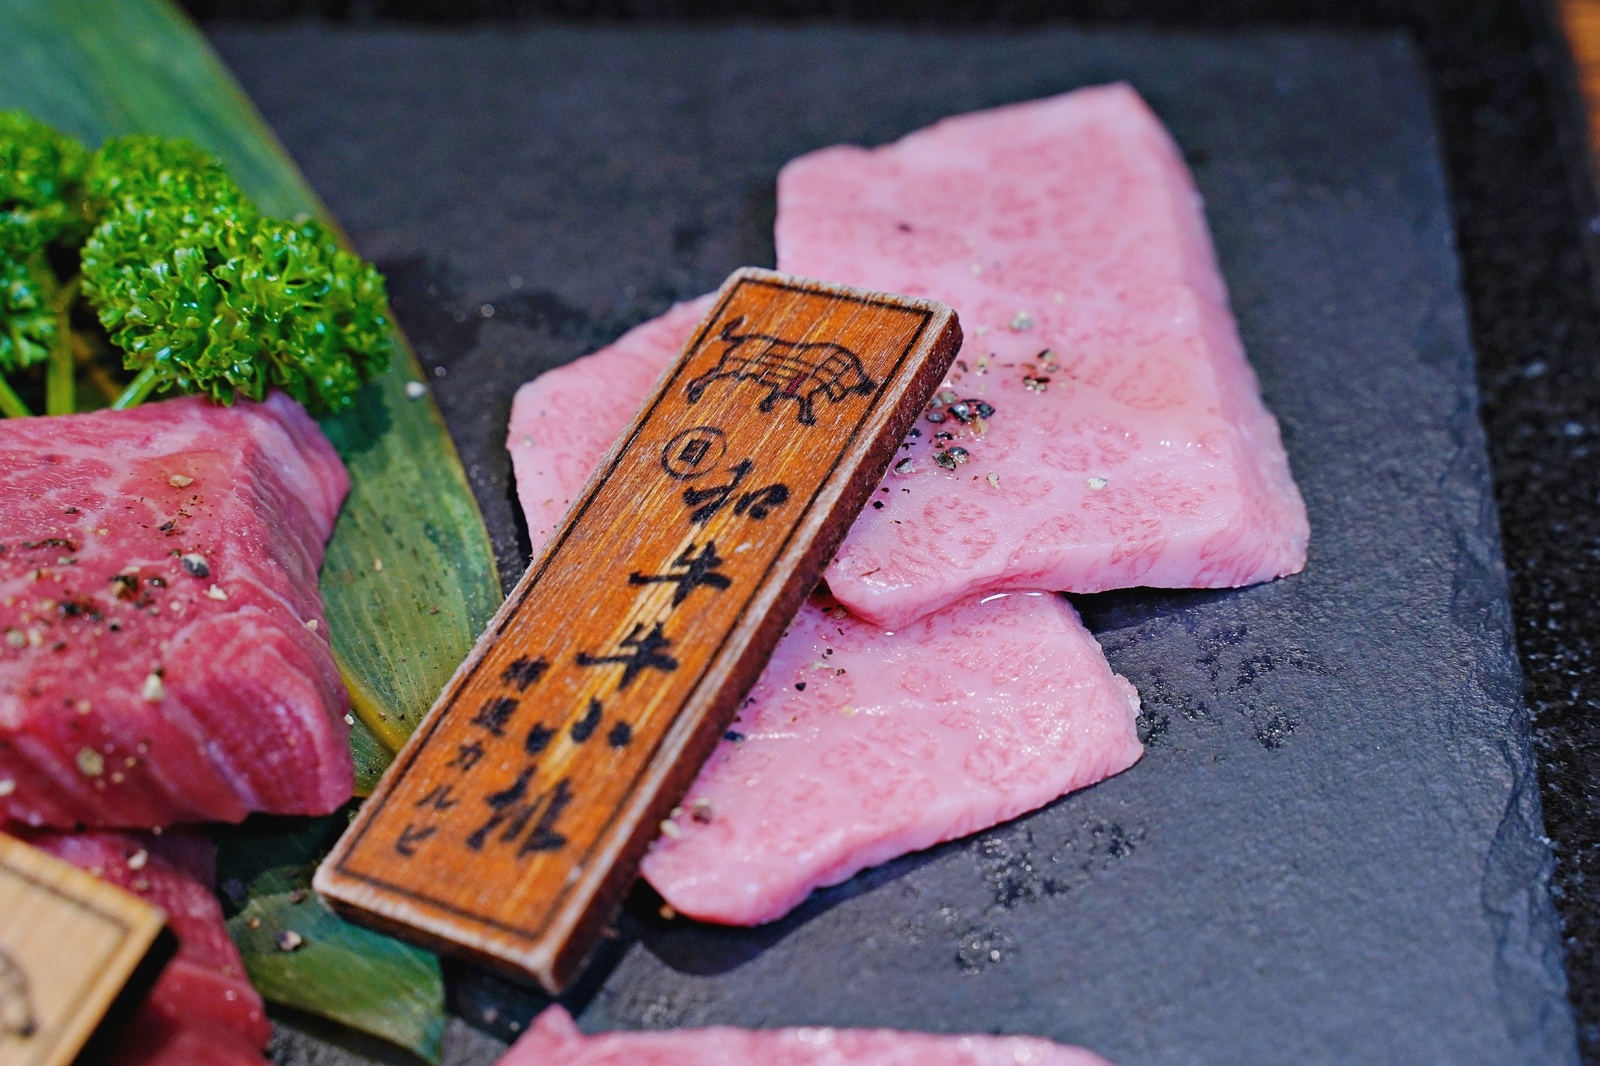 國父紀念館捷運站美食「上吉燒肉Yakiniku」專人幫烤和牛大餐爽爽吃燒肉